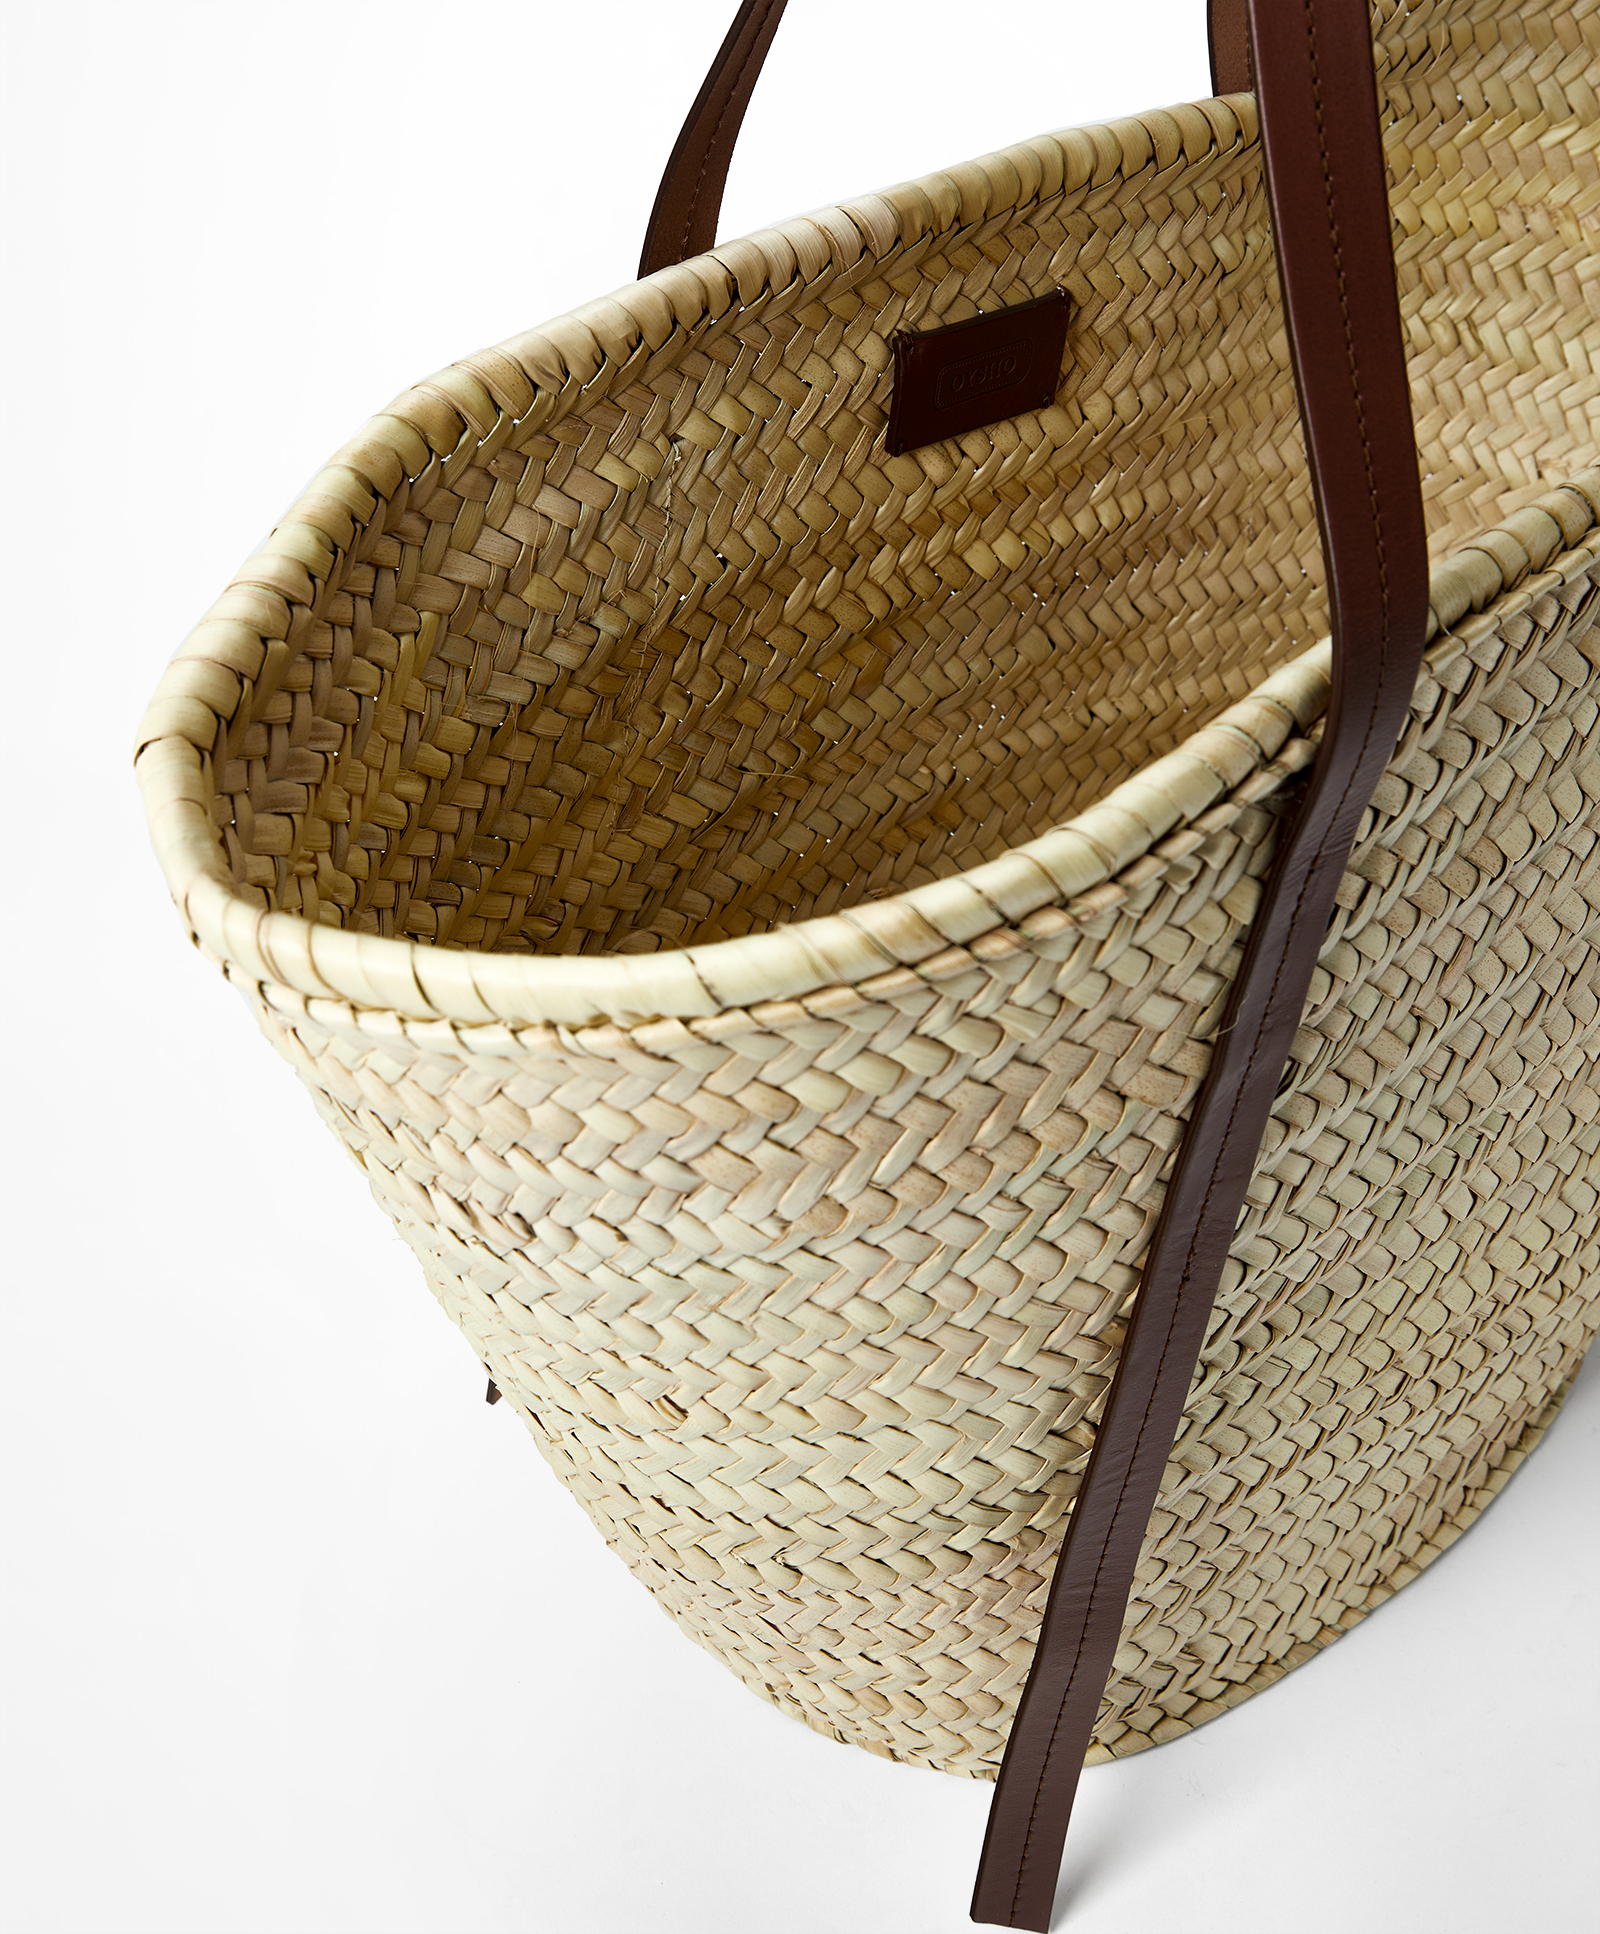 Leather handle basket